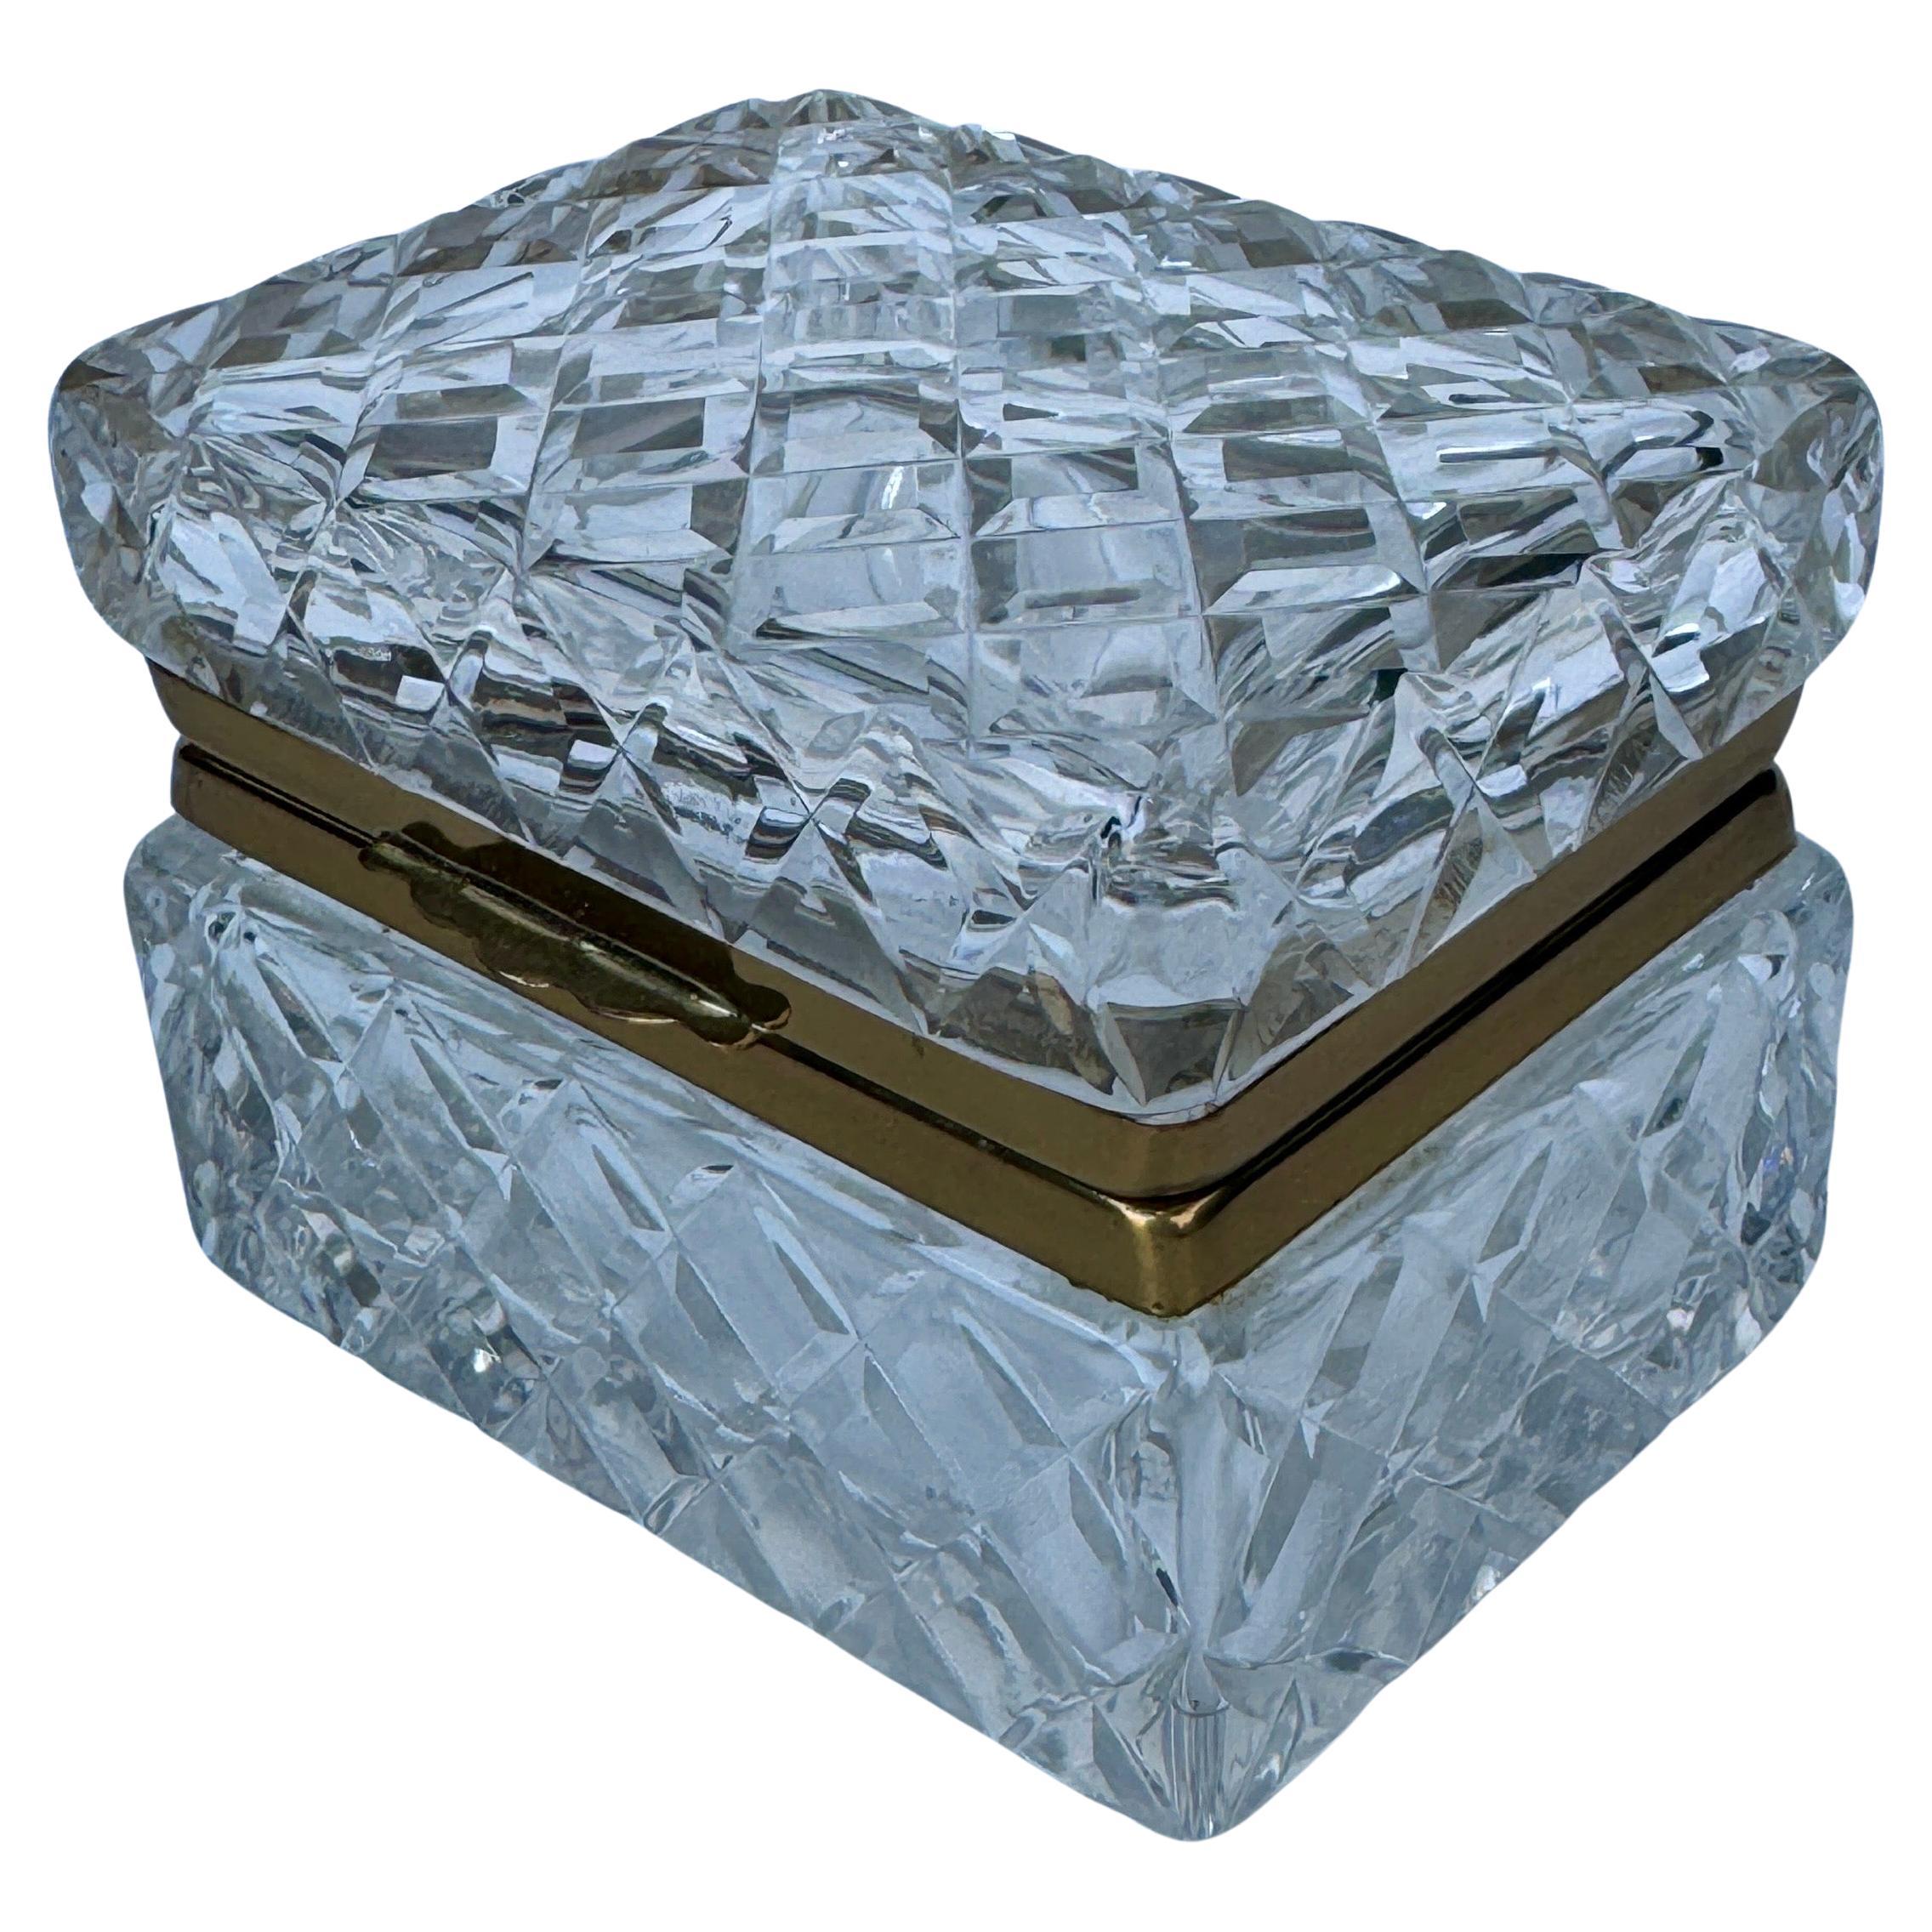 Petite boîte à Candis ou à bijoux en verre taillé rectangulaire en vente